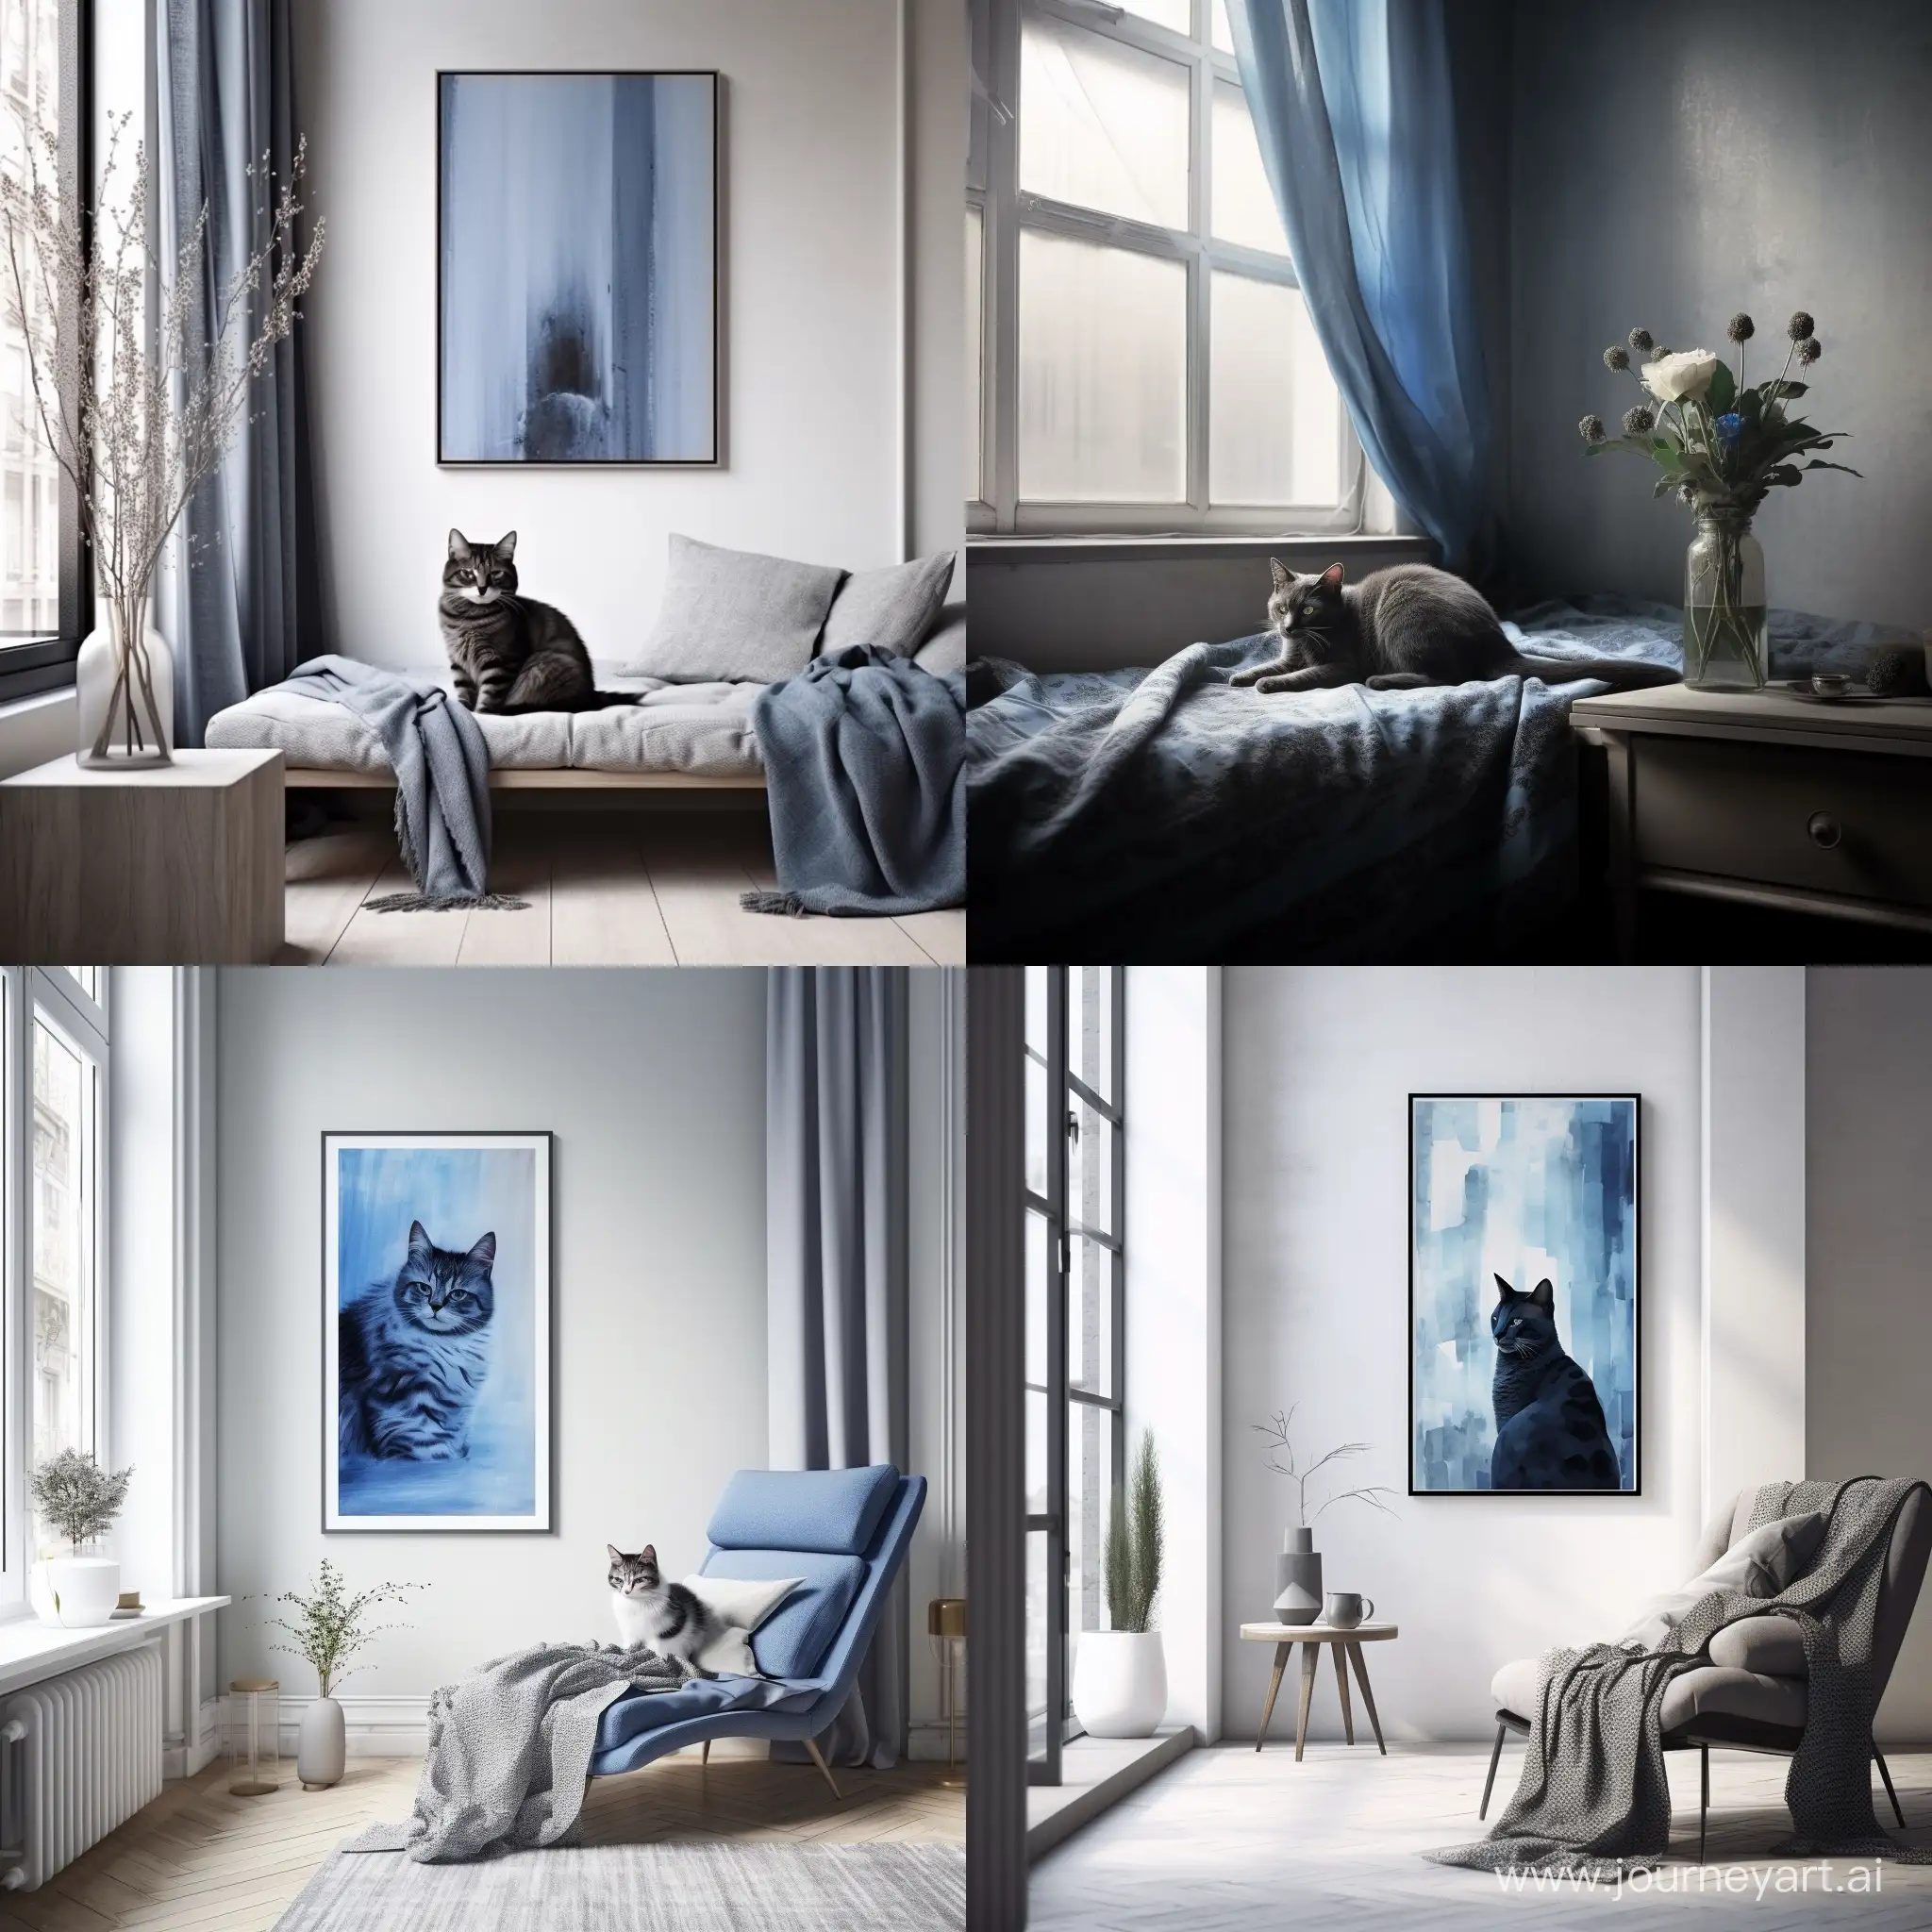 Стиль минимализм, голубая кошка с черными узорами лениво разлеглась на фоне окна, мягкий свет проникает через окна отбрасывая блики на кошку, минимализм 